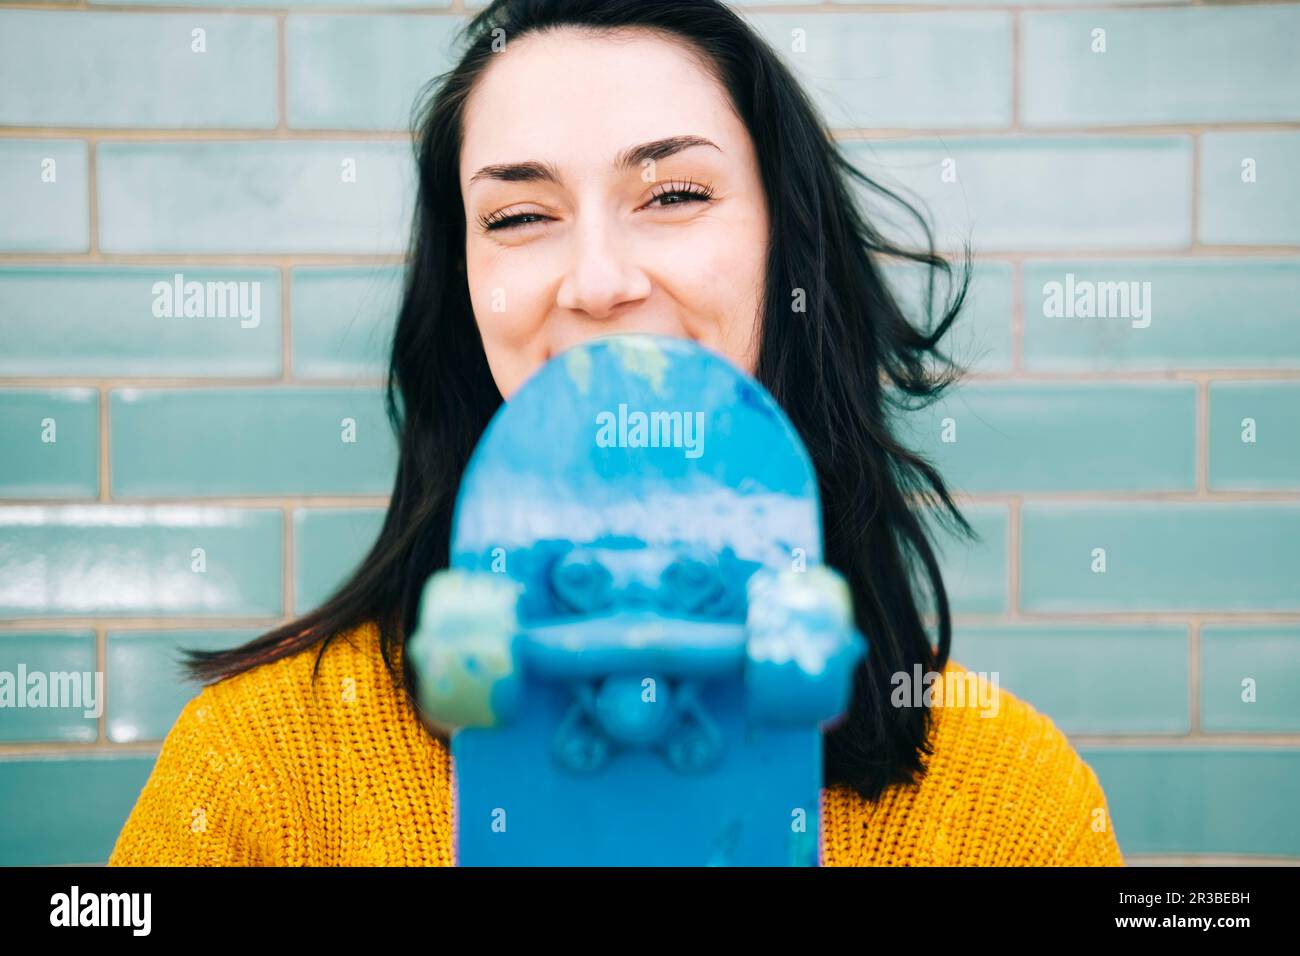 Glückliche junge Frau mit schwarzem Haar, die blaues Skateboard vor der Wand hält Stockfoto